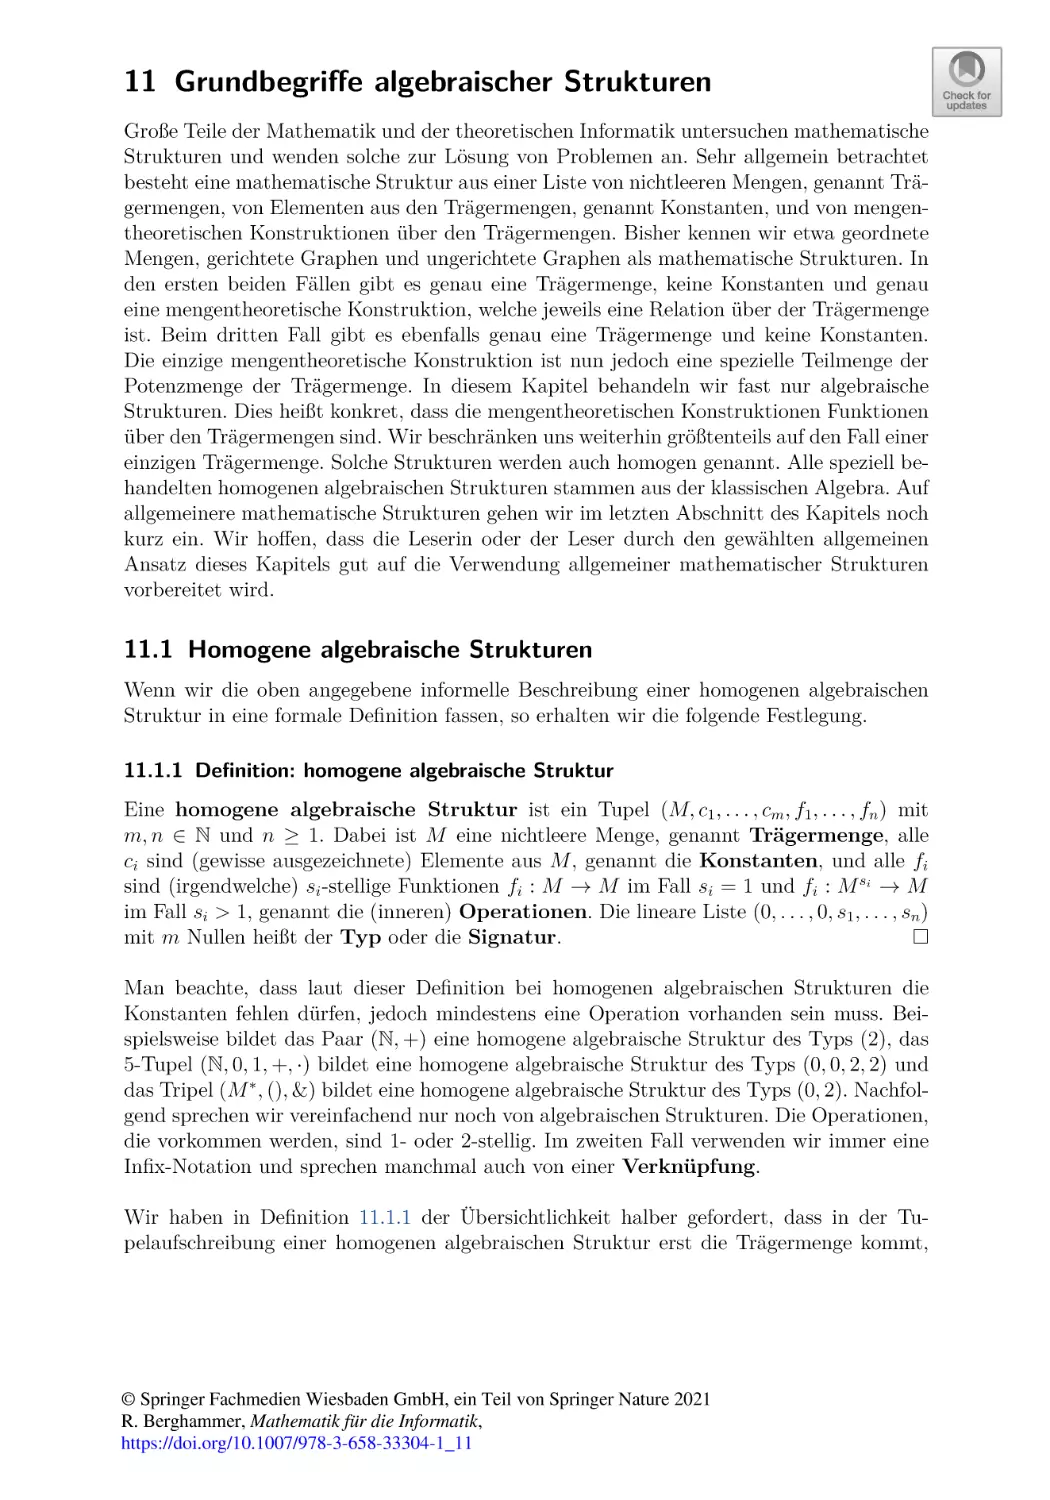 11 Grundbegriffe algebraischer Strukturen
11.1 Homogene algebraische Strukturen
11.1.1 Definition